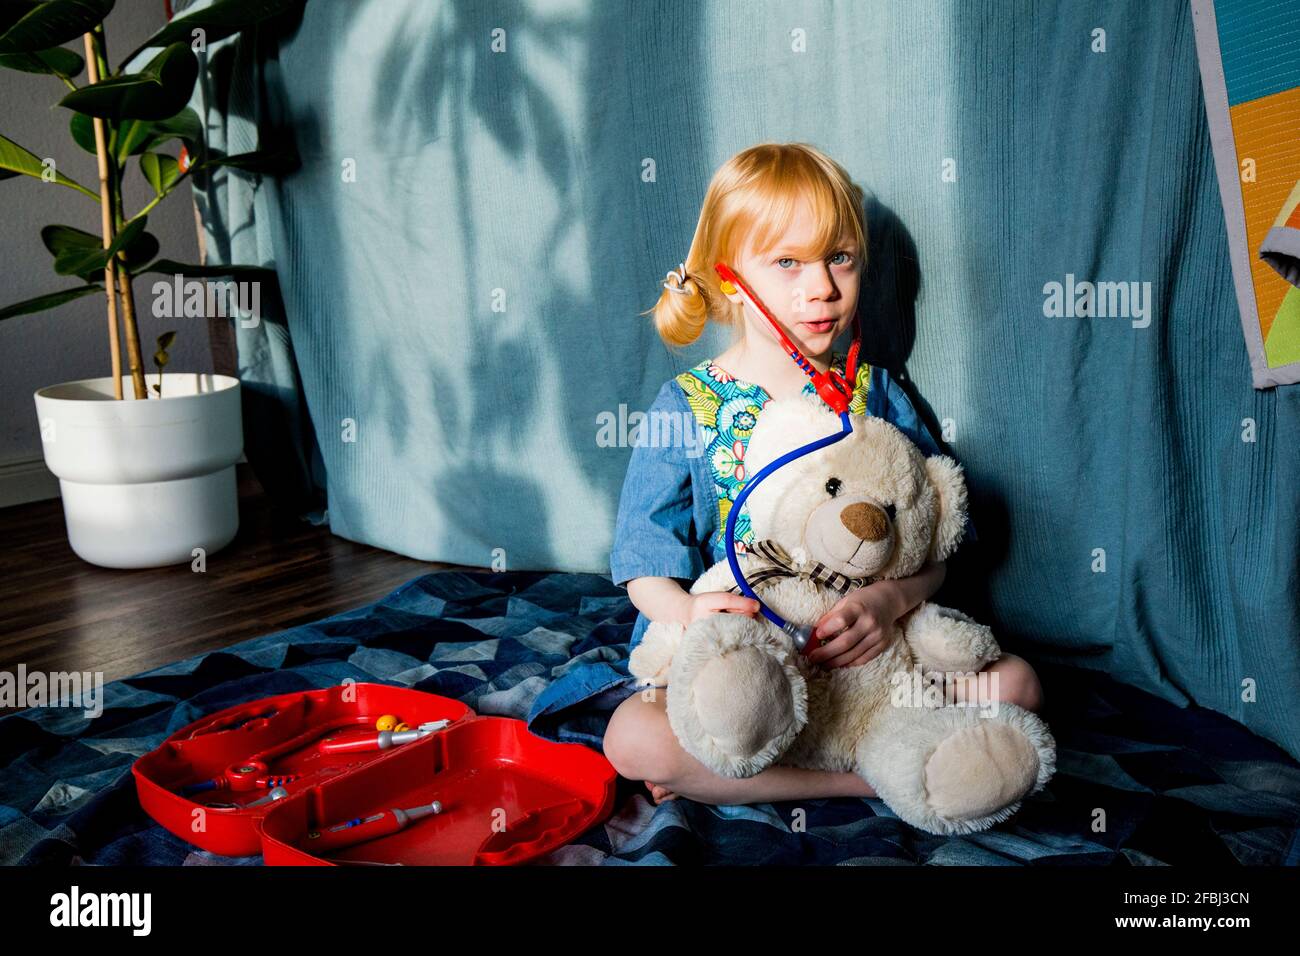 Fille blonde aspirante jouant avec stéthoscope et ours en peluche à accueil Banque D'Images